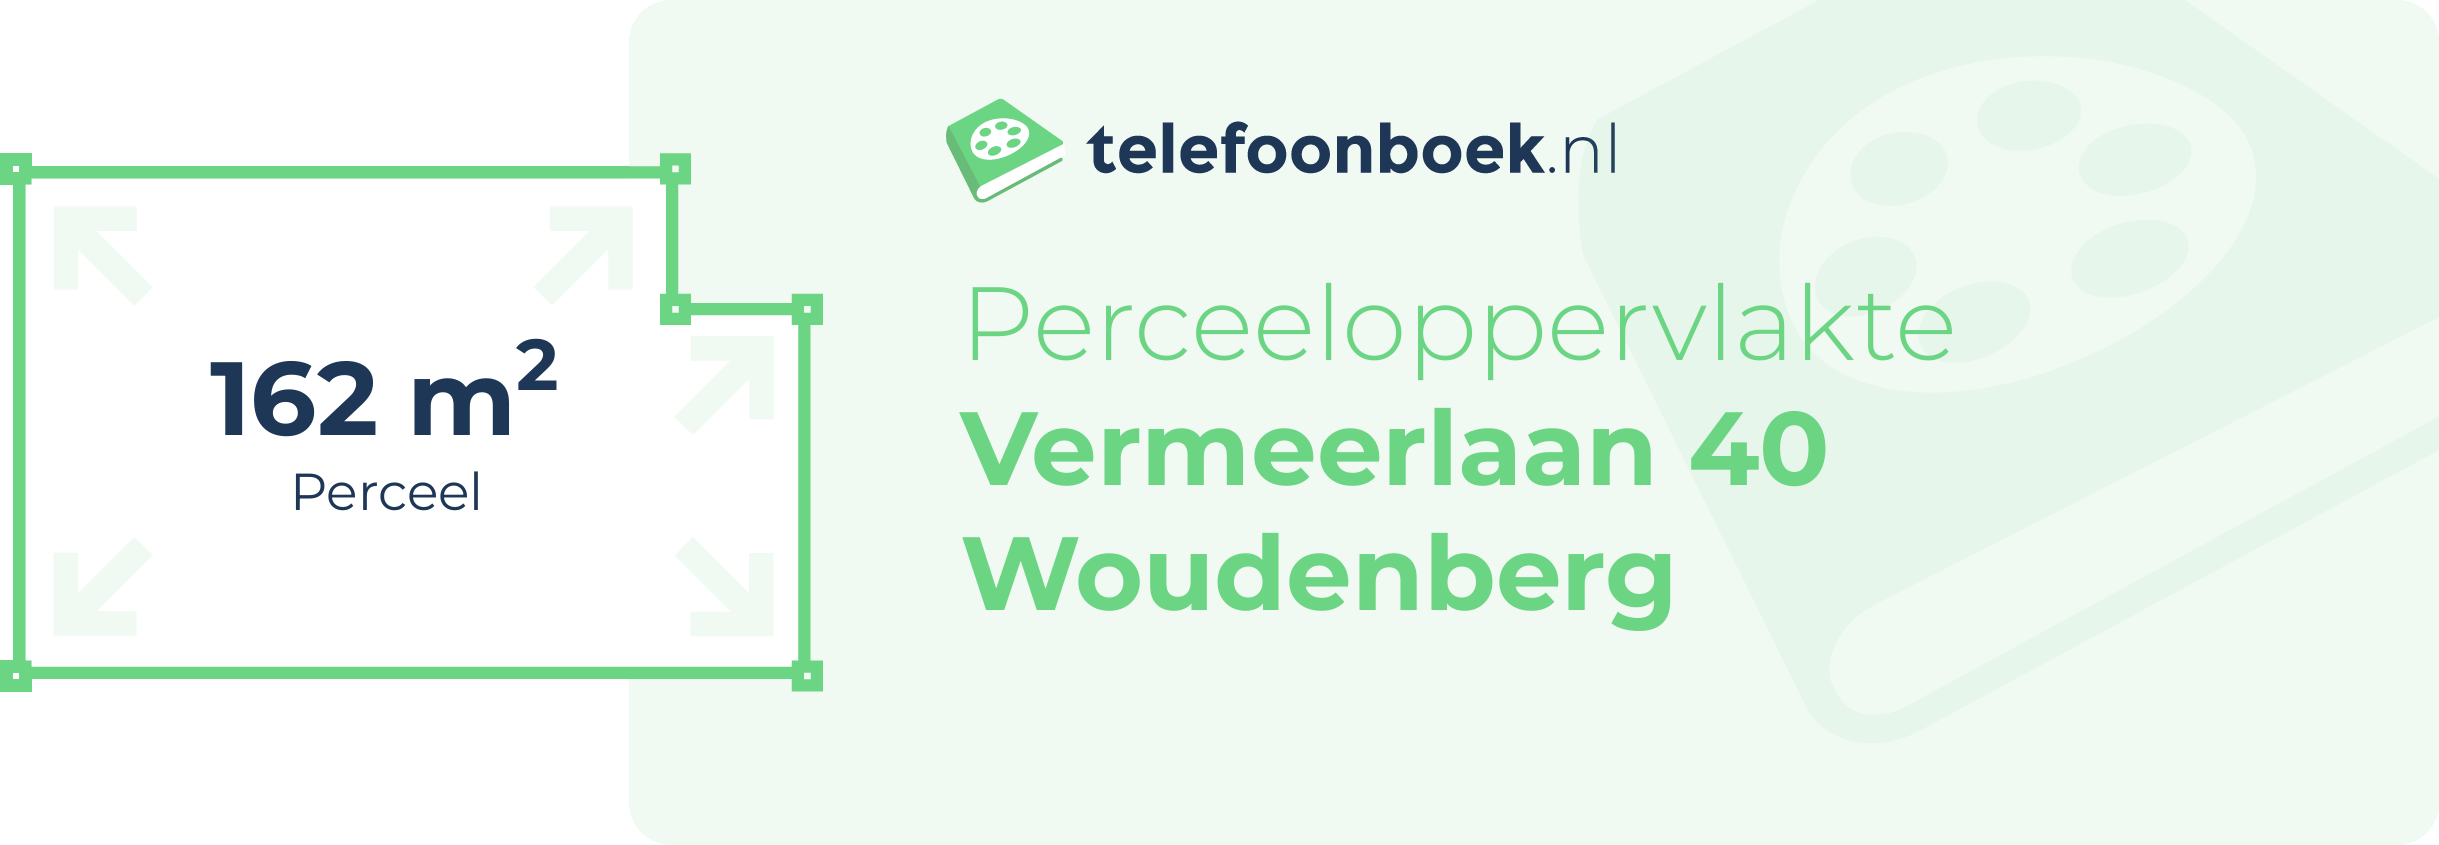 Perceeloppervlakte Vermeerlaan 40 Woudenberg